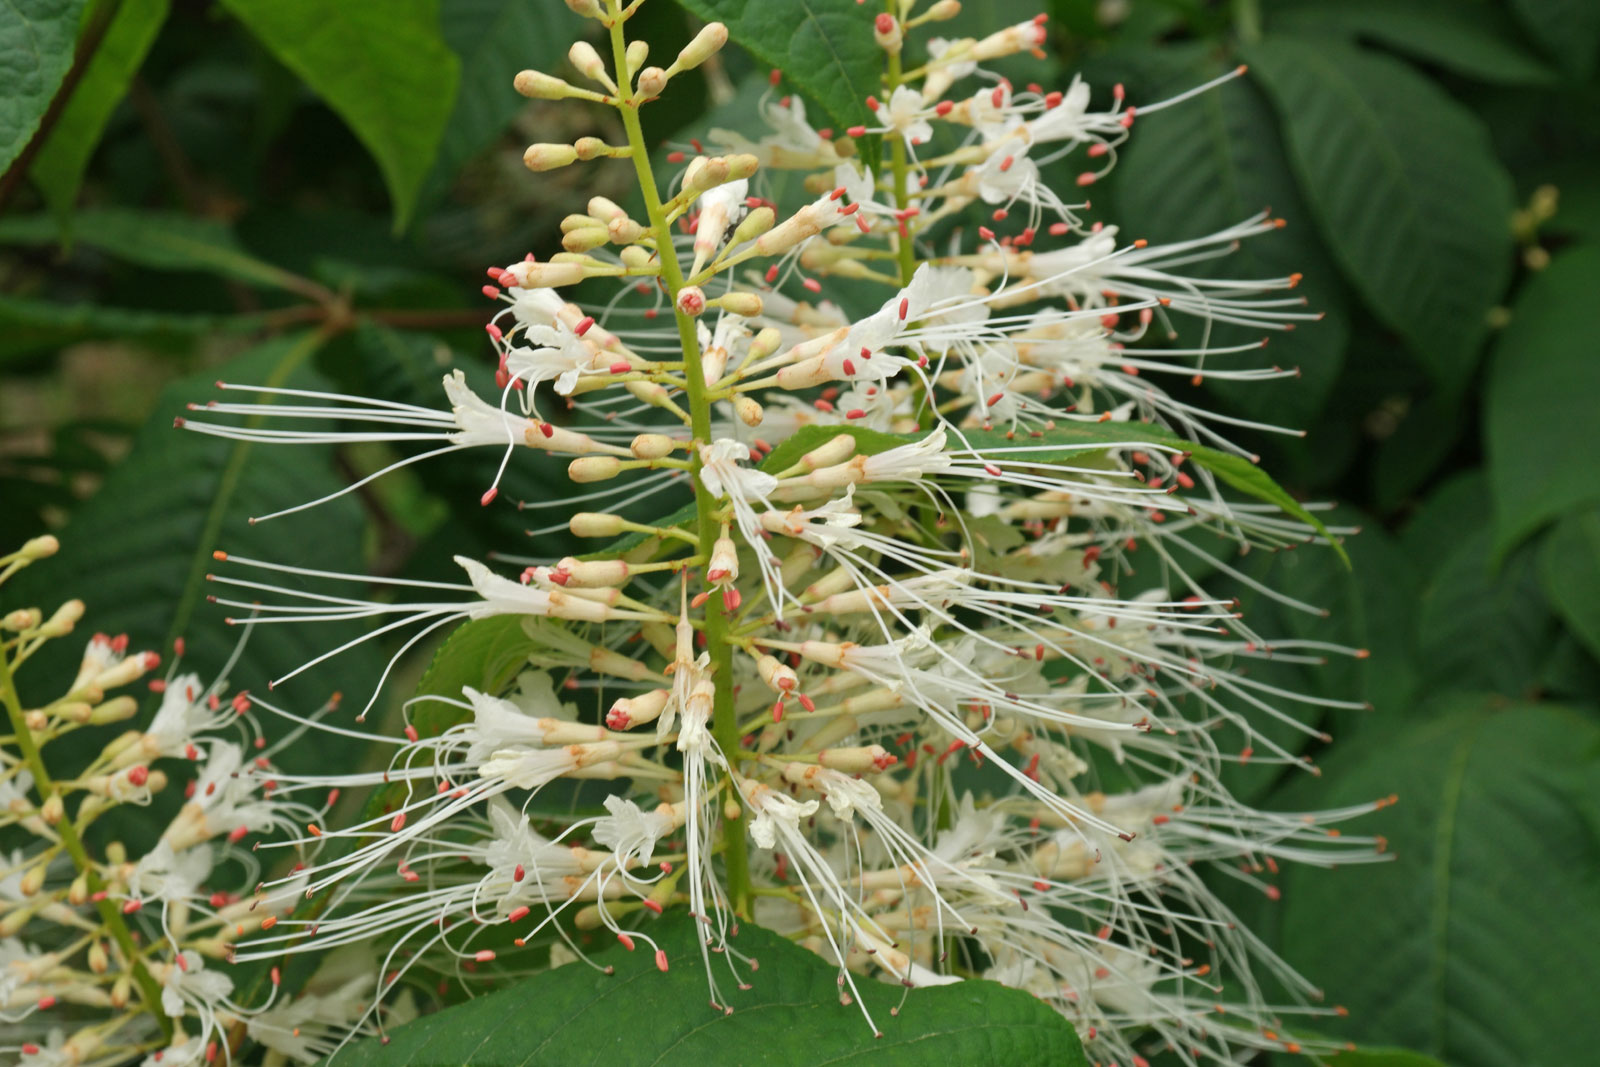 Aesculus parviflora